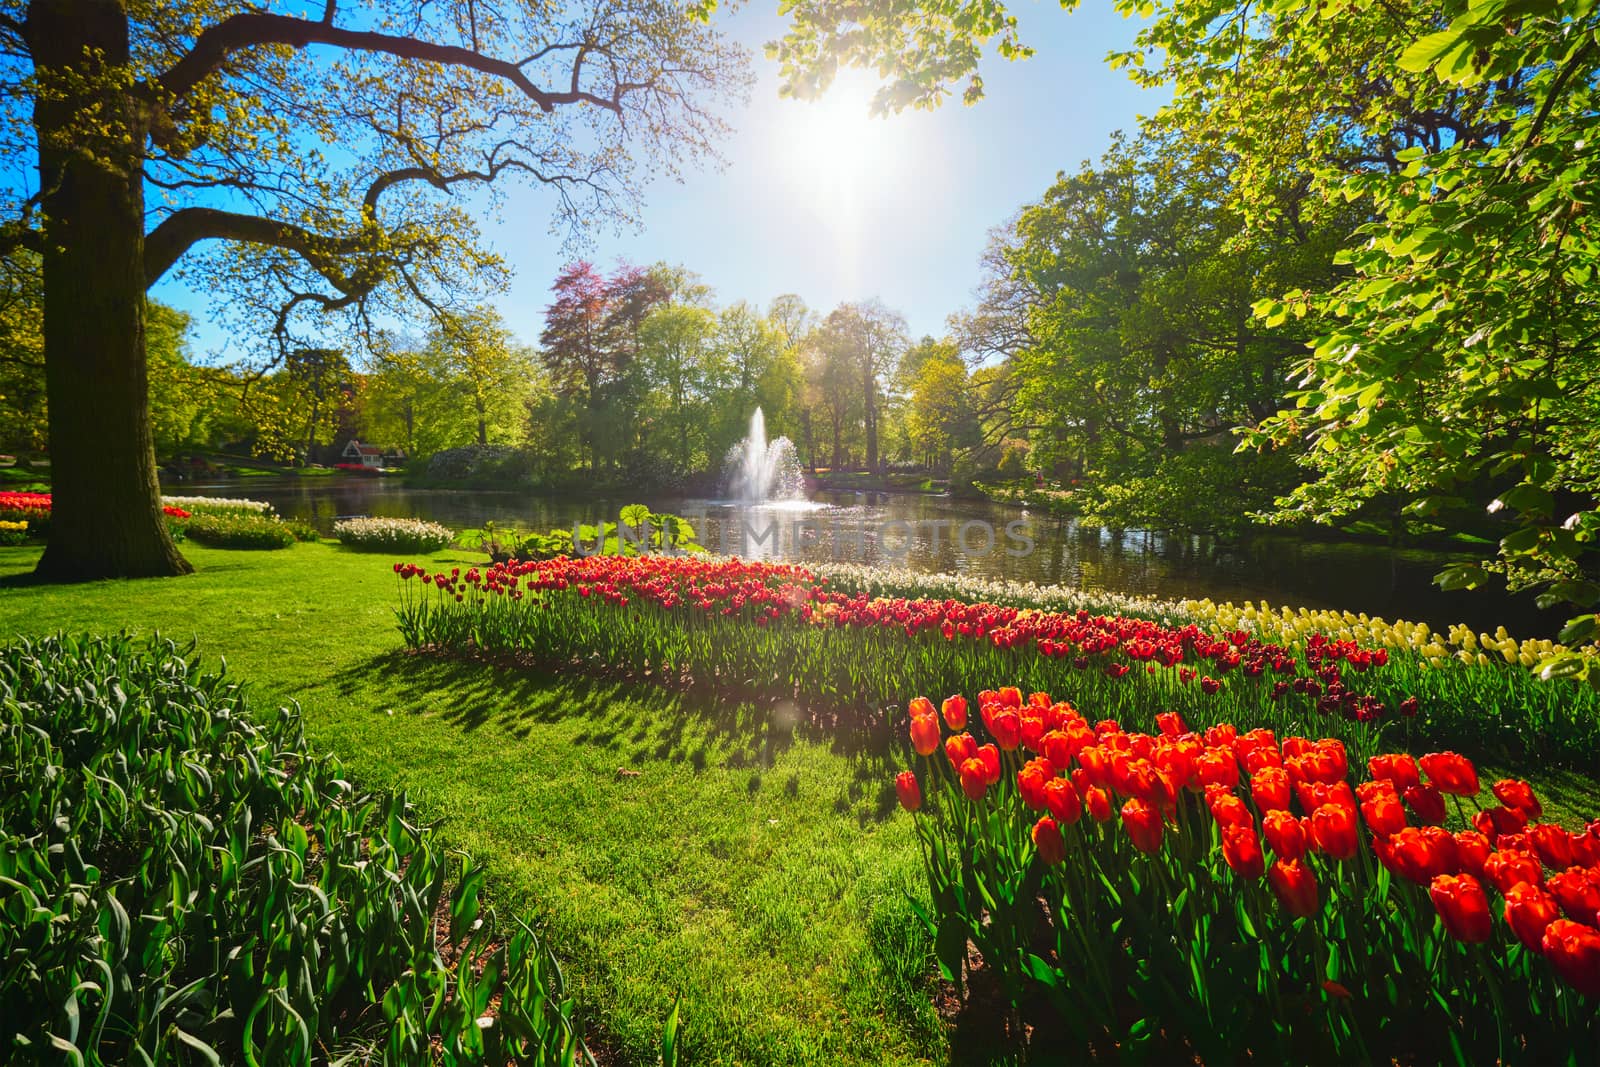 Keukenhof flower garden. Lisse, the Netherlands. by dimol